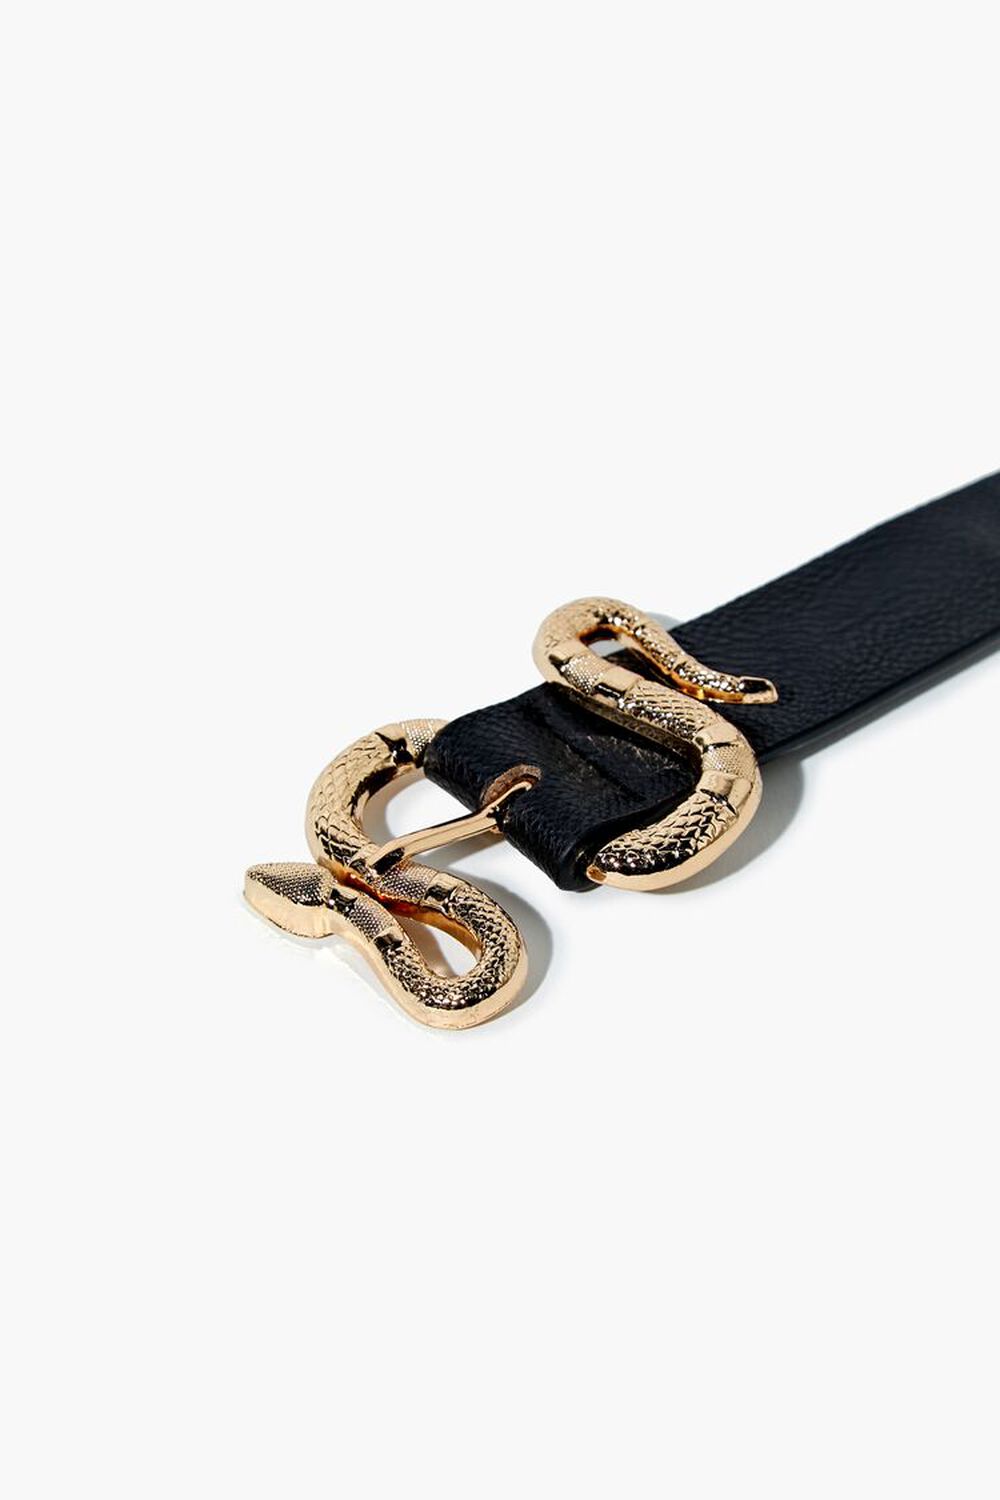 BLACK/GOLD Faux Leather Snake Buckle Belt, image 3